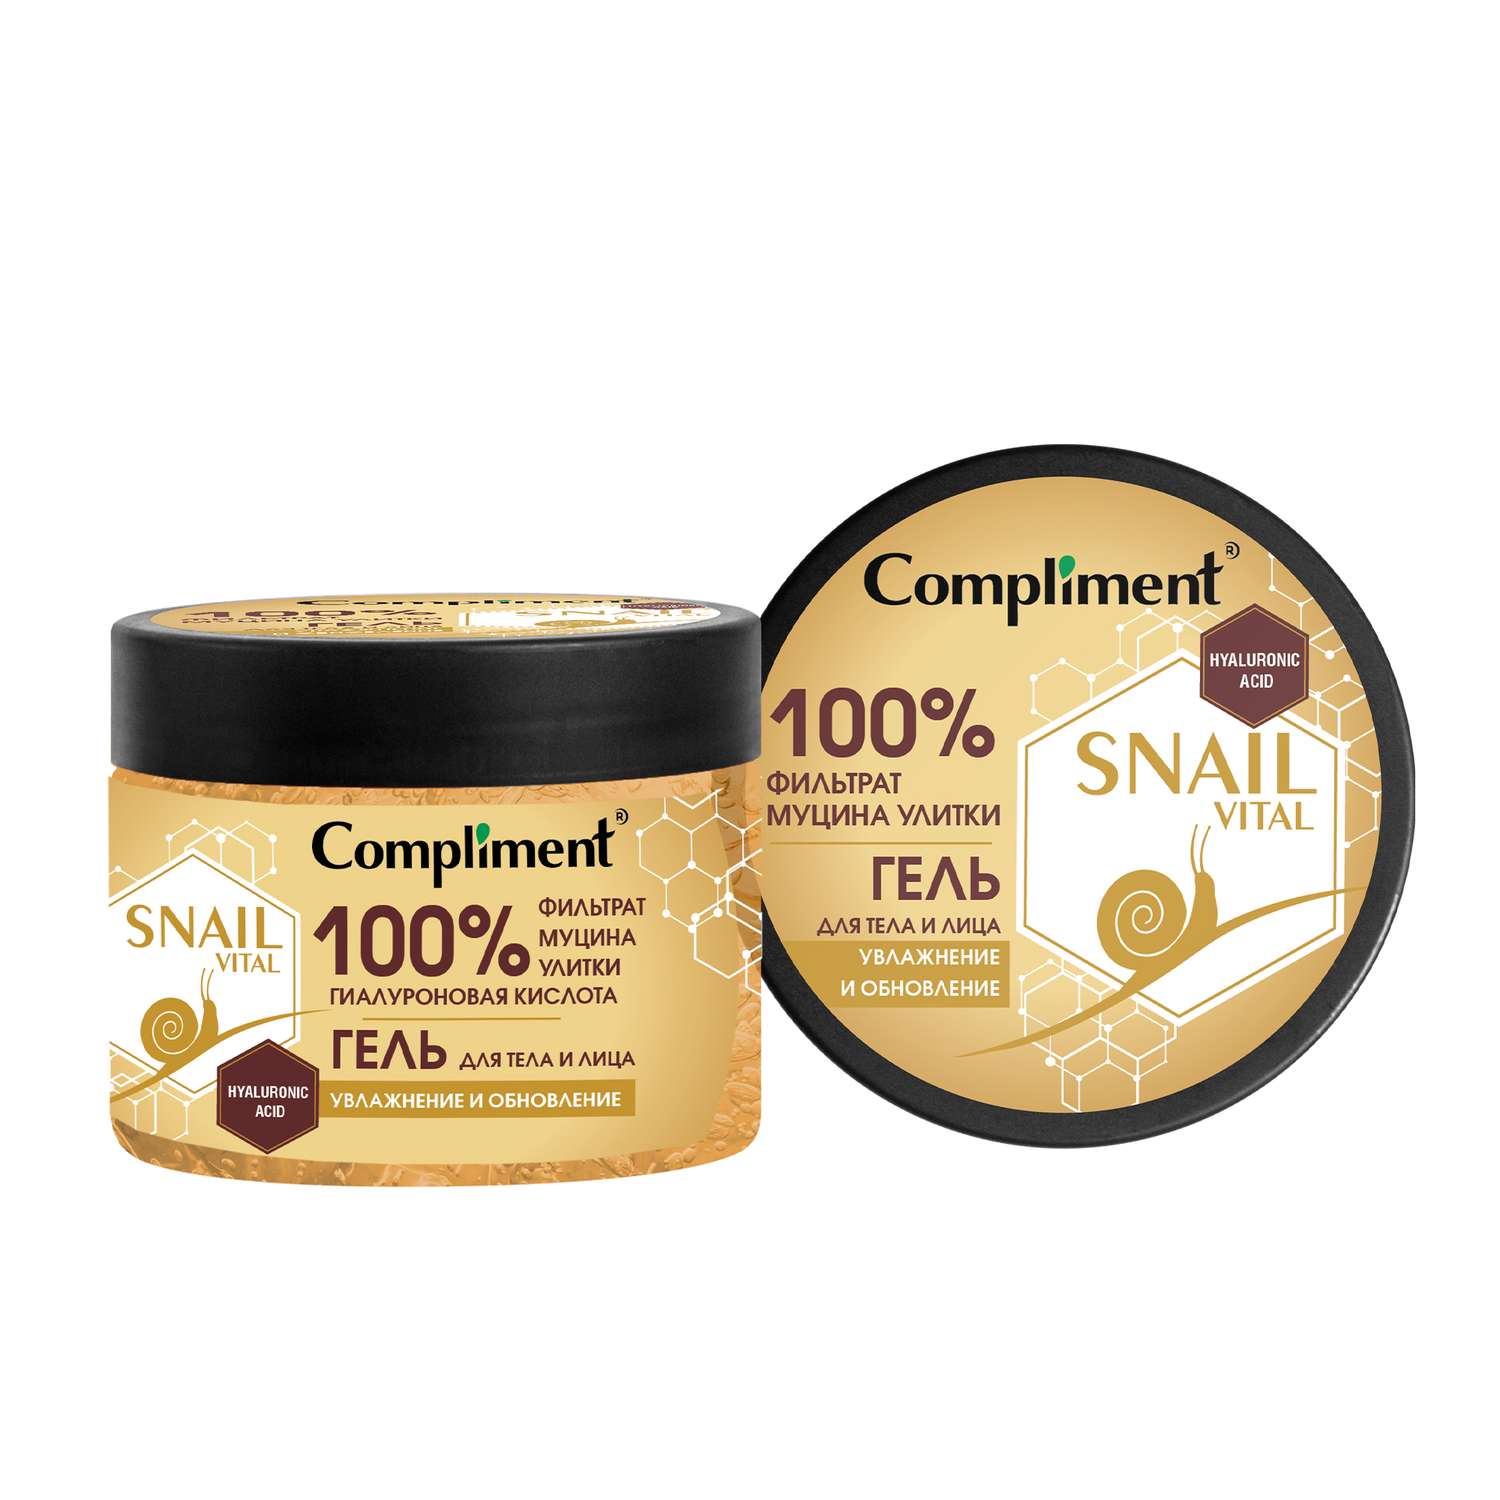 Гель Compliment Snail Vital для лица и тела увлажнение и обновление 400 мл - фото 1